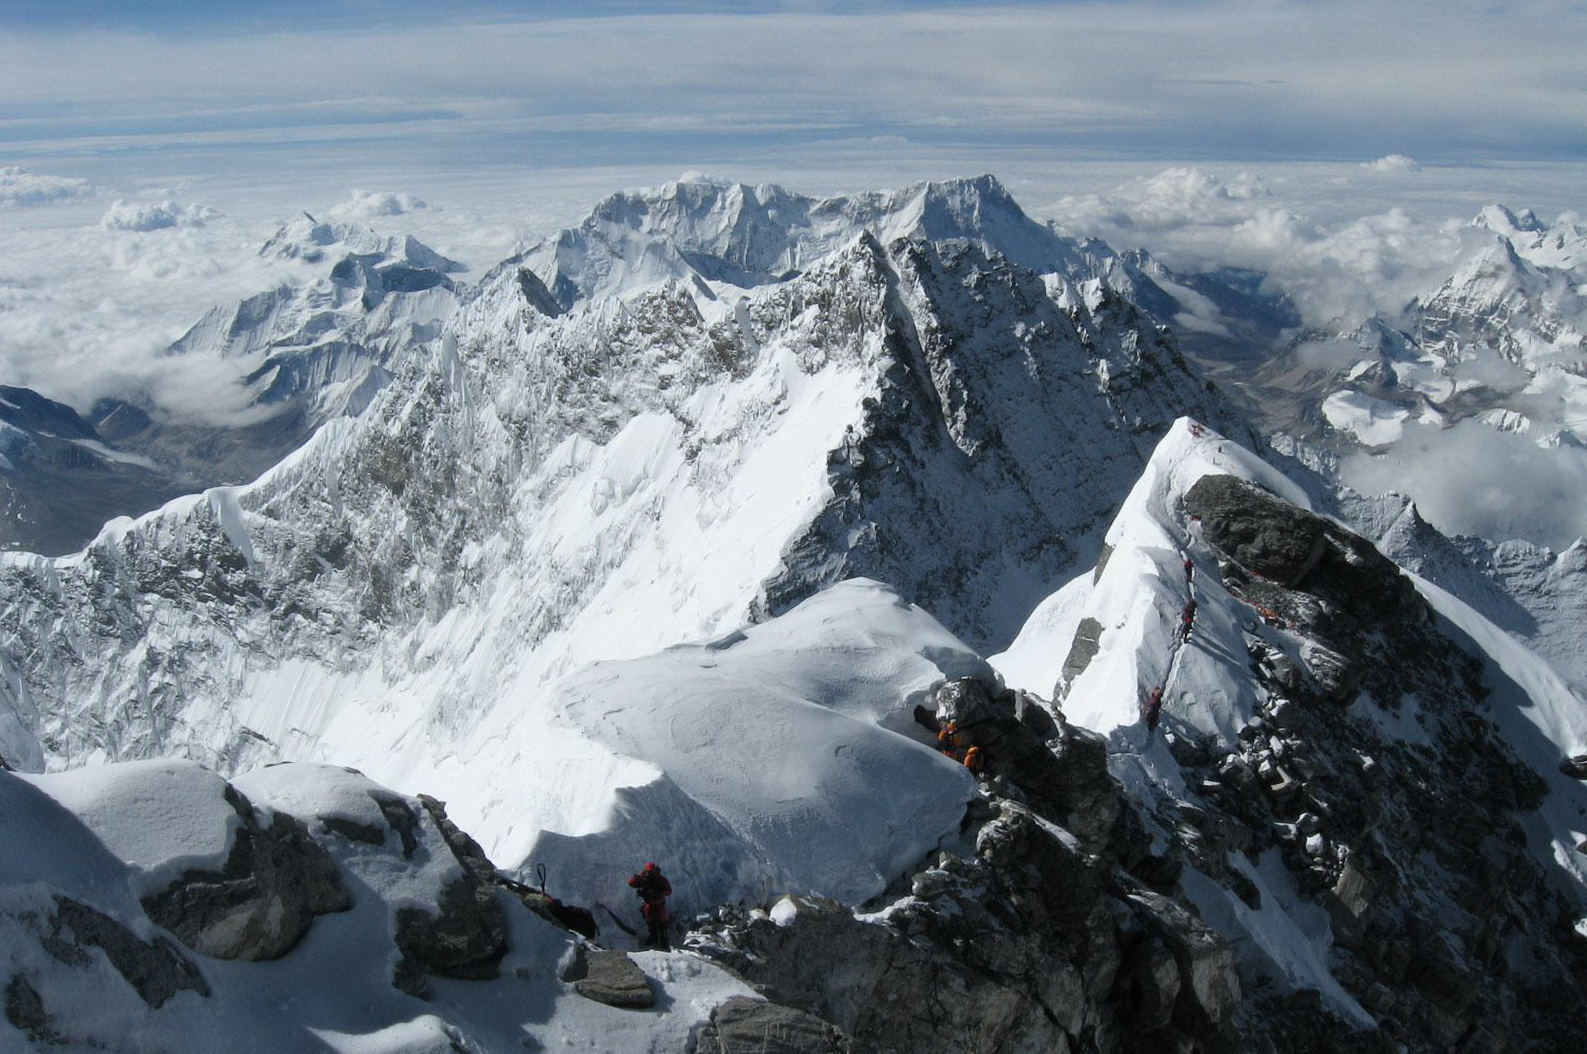 Высочайшая вершина мира Джомолунгма в Гималаях (8848 м).